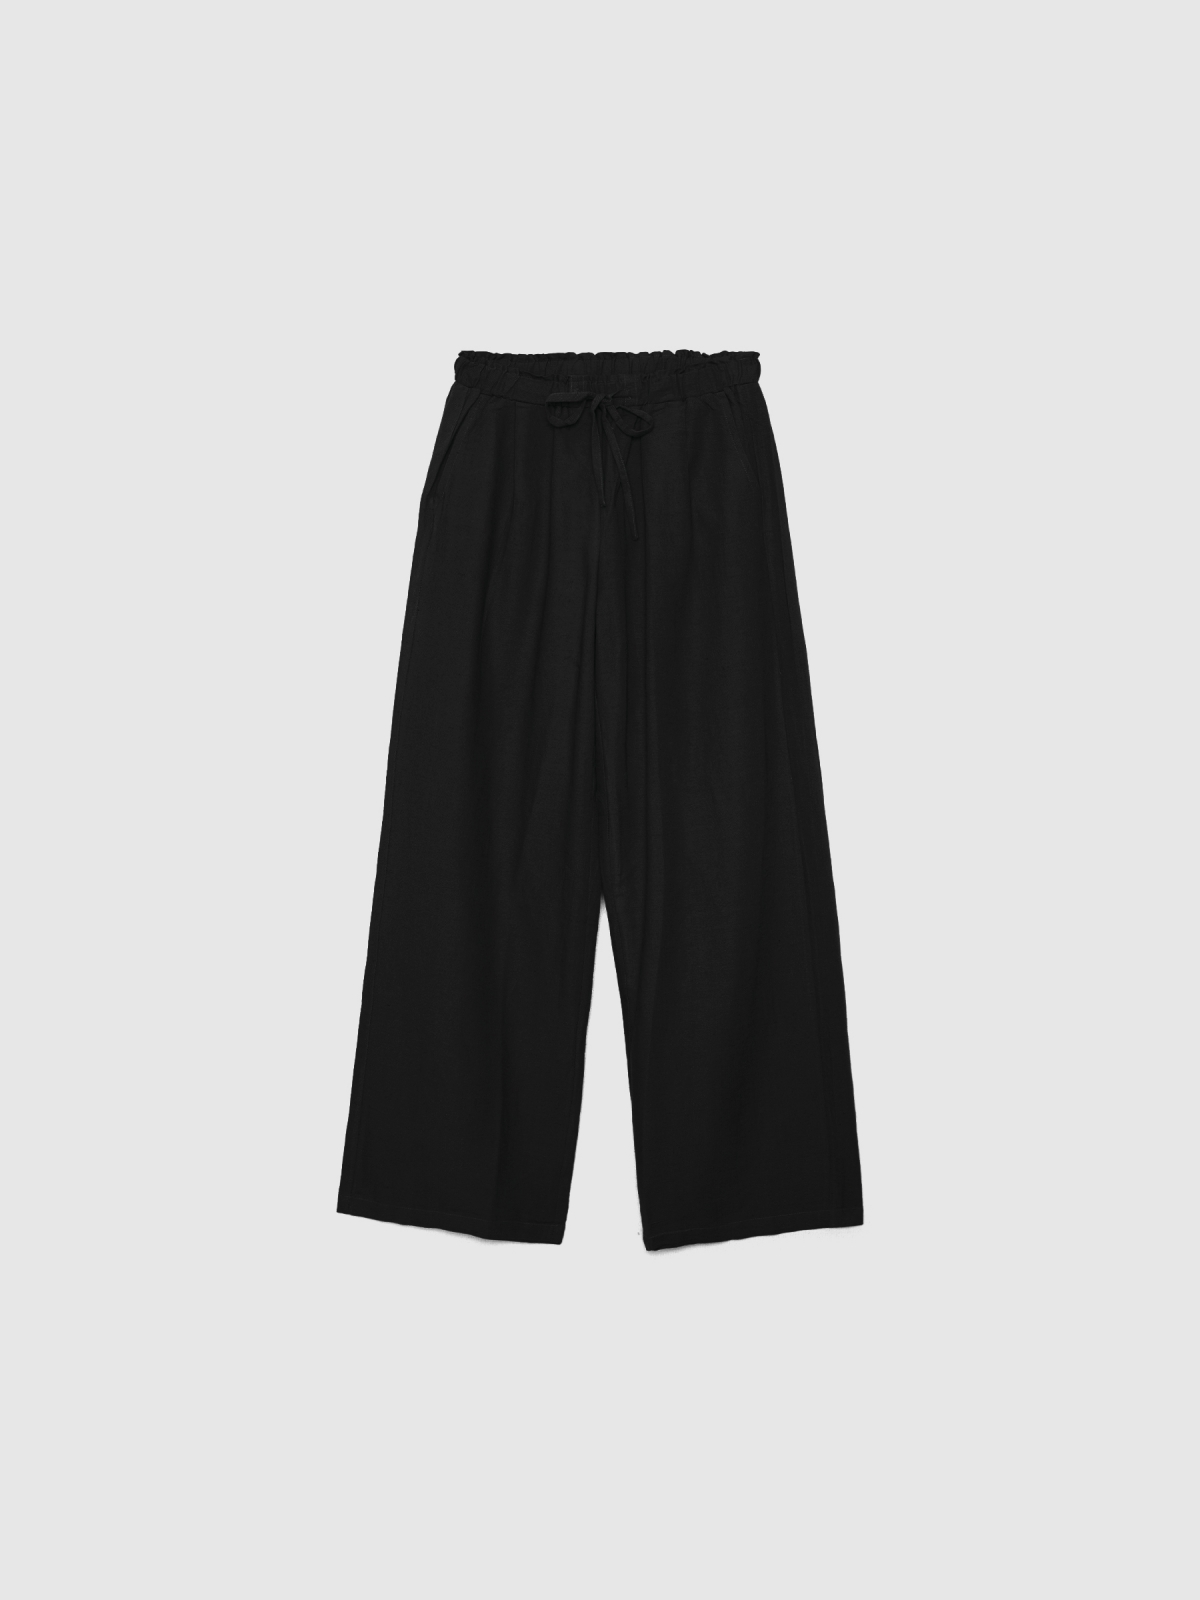  Pantalón wide-leg lino negro